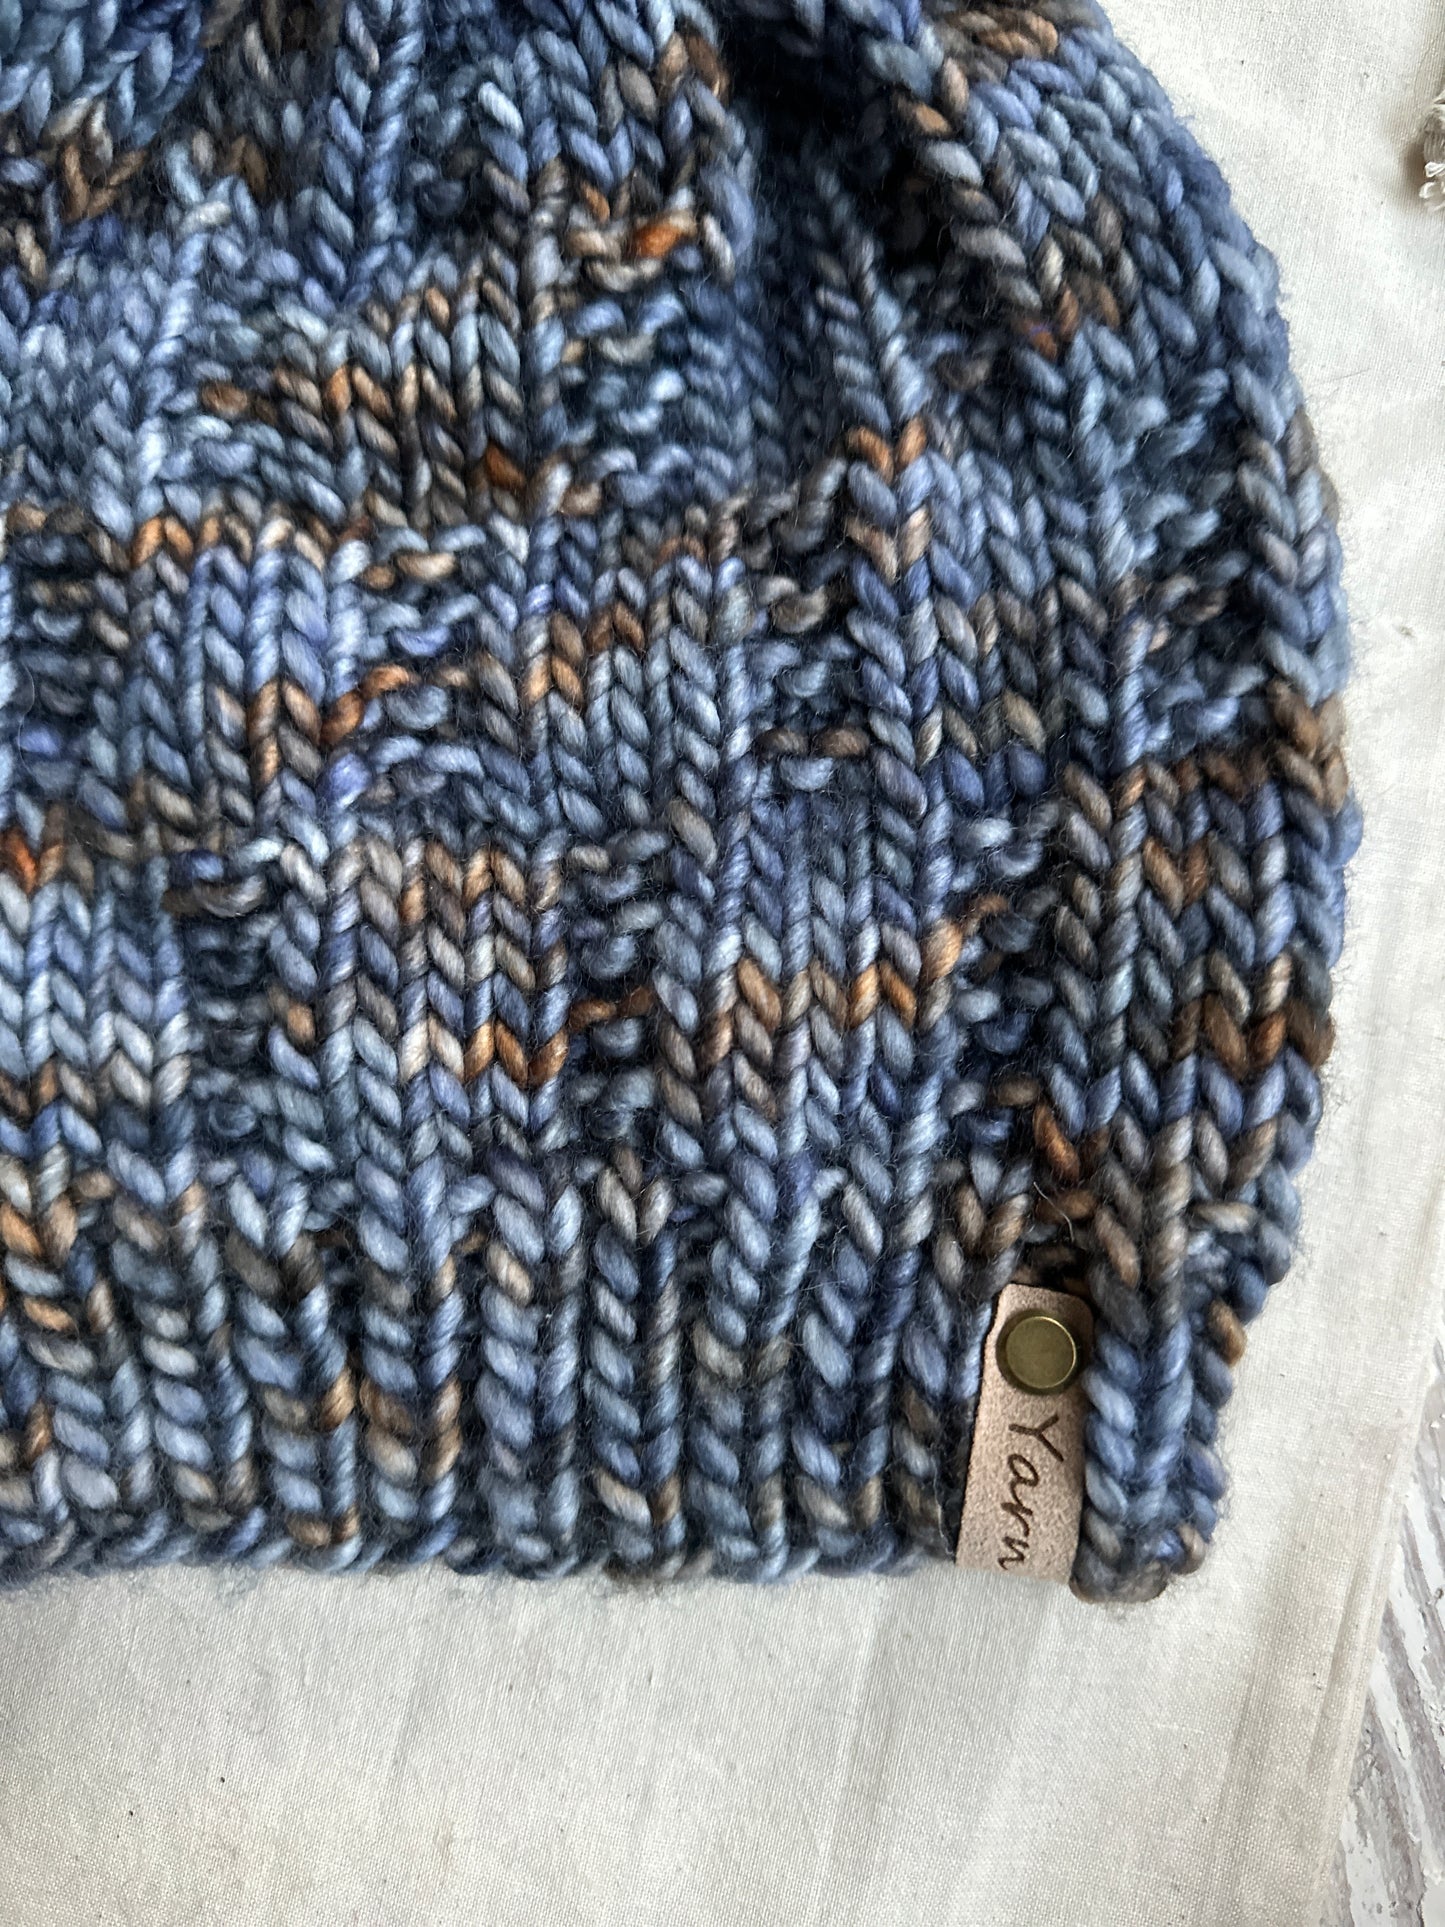 Men’s Merino wool knit hat